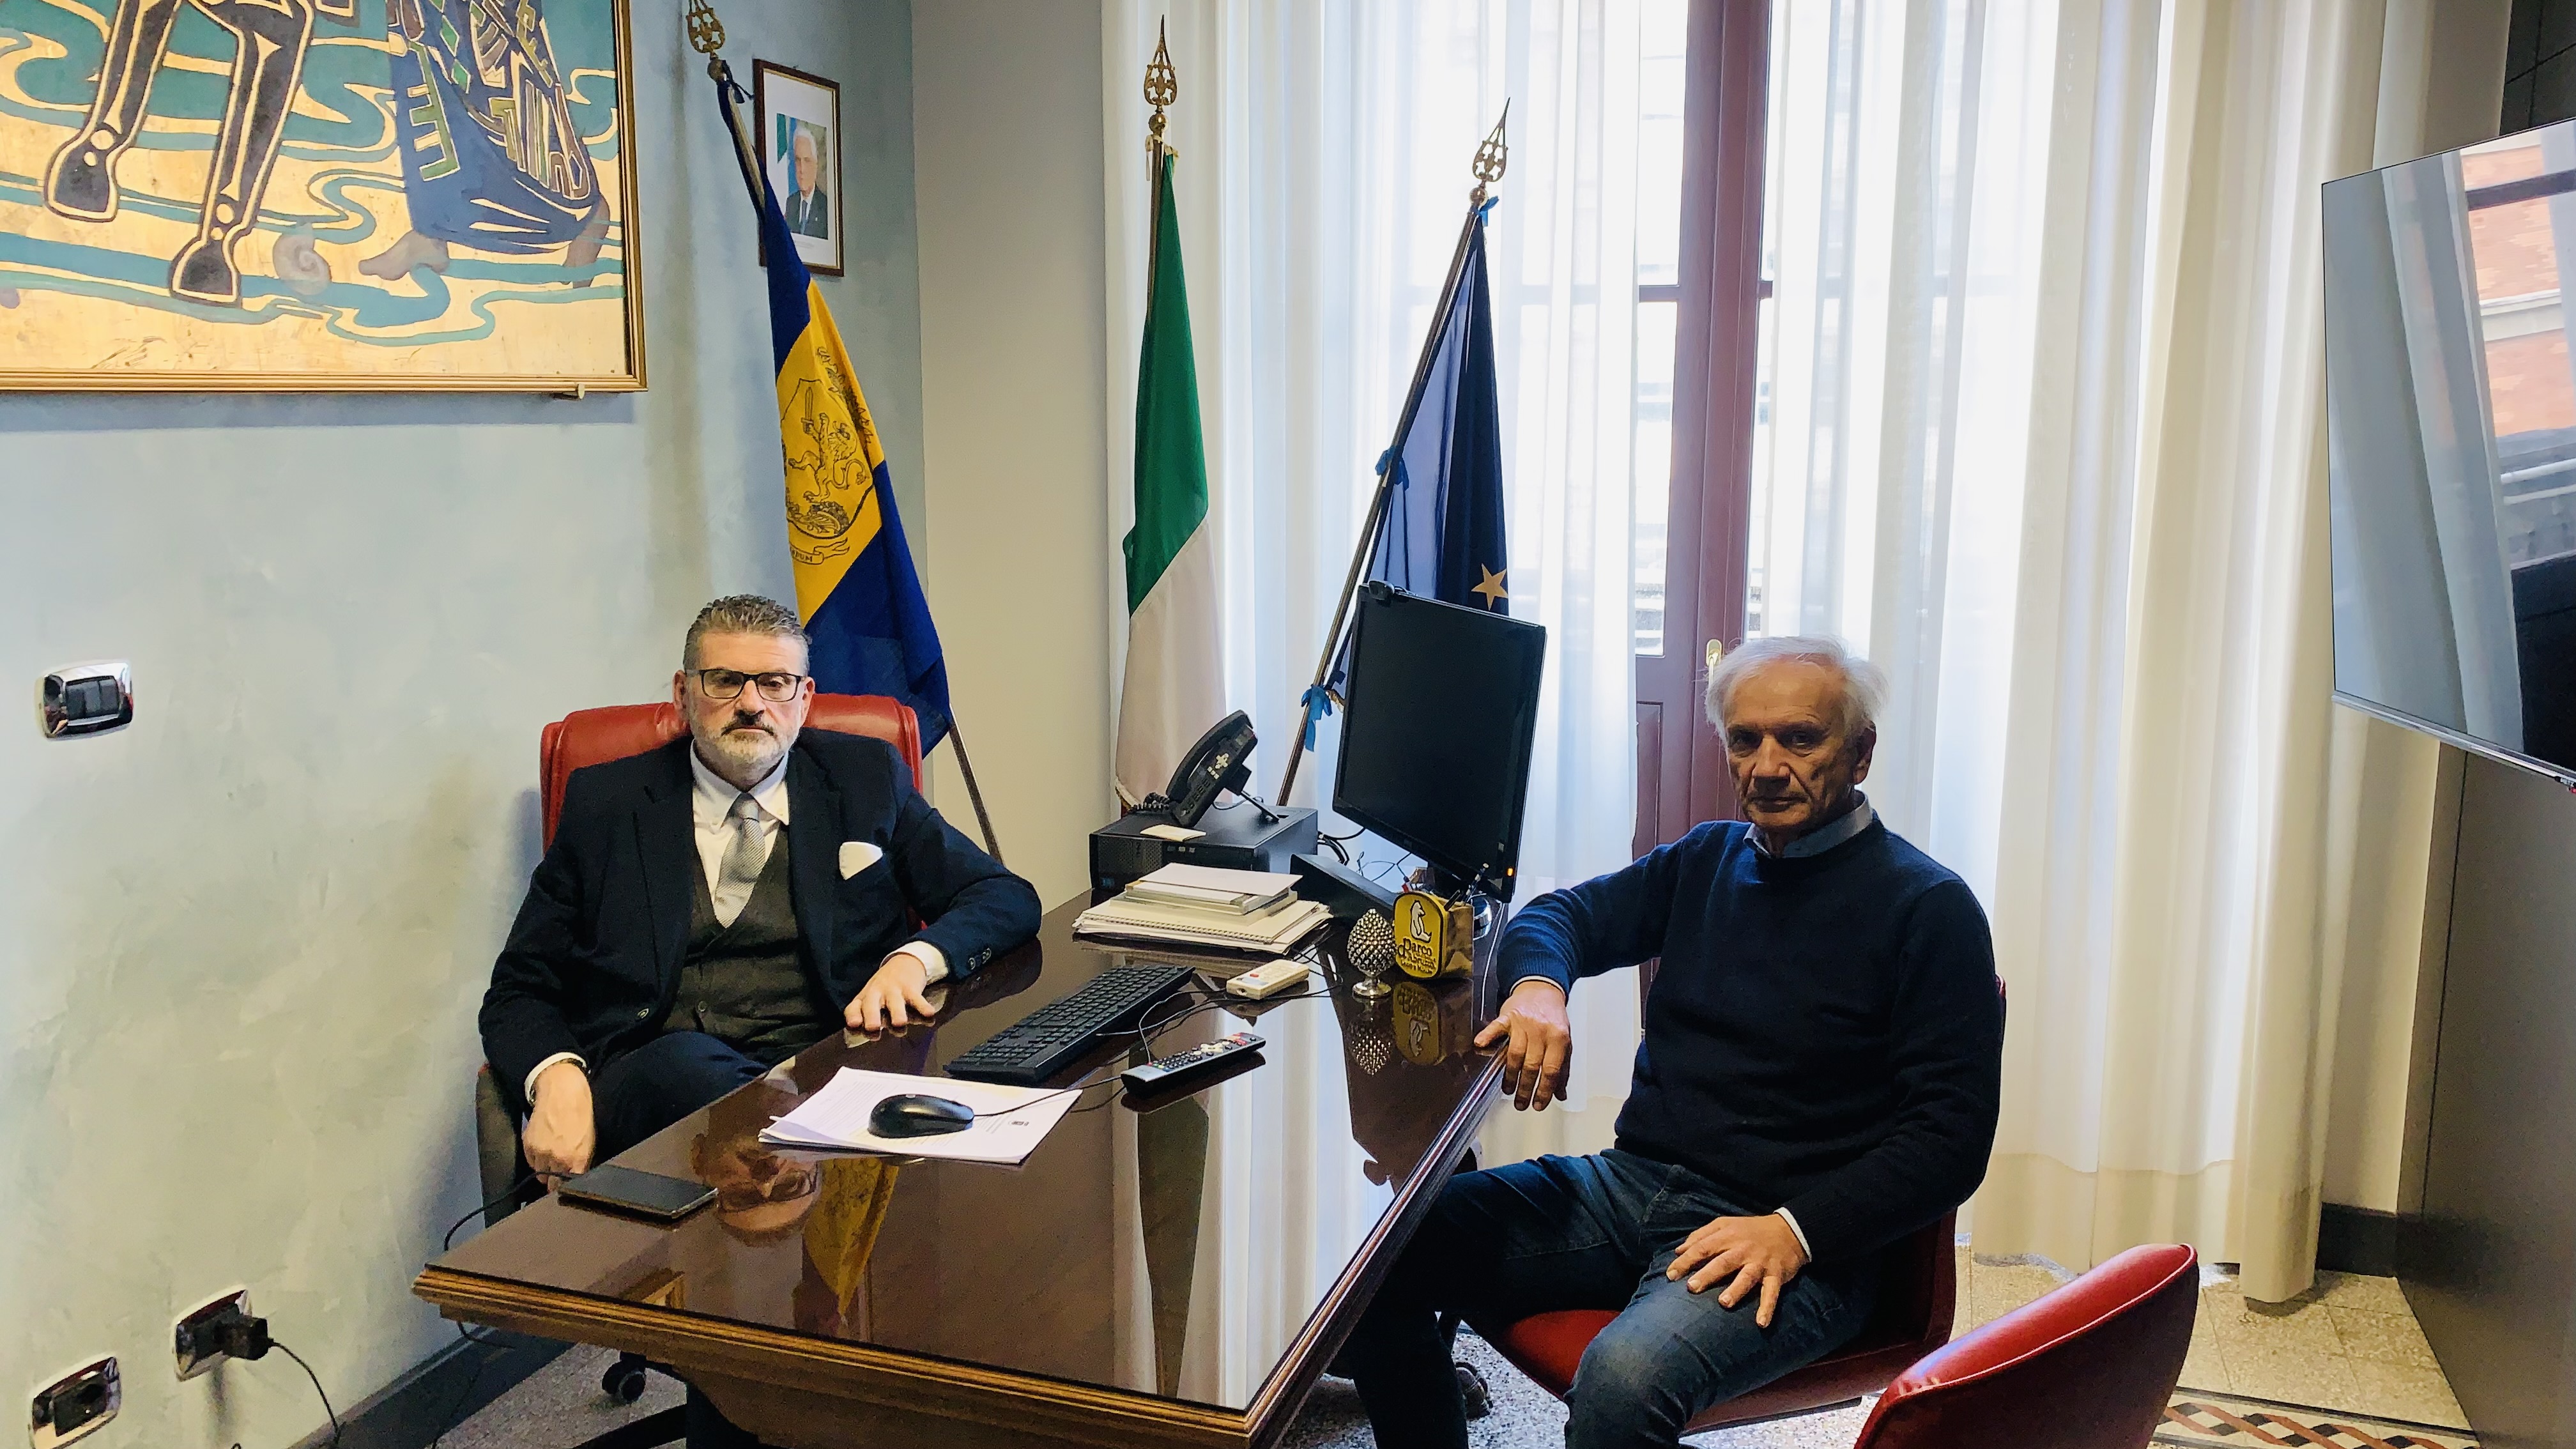 Aeroporto civile di Frosinone - Il segretario generale dell’Arpaf incontra Gianluca Quadrini